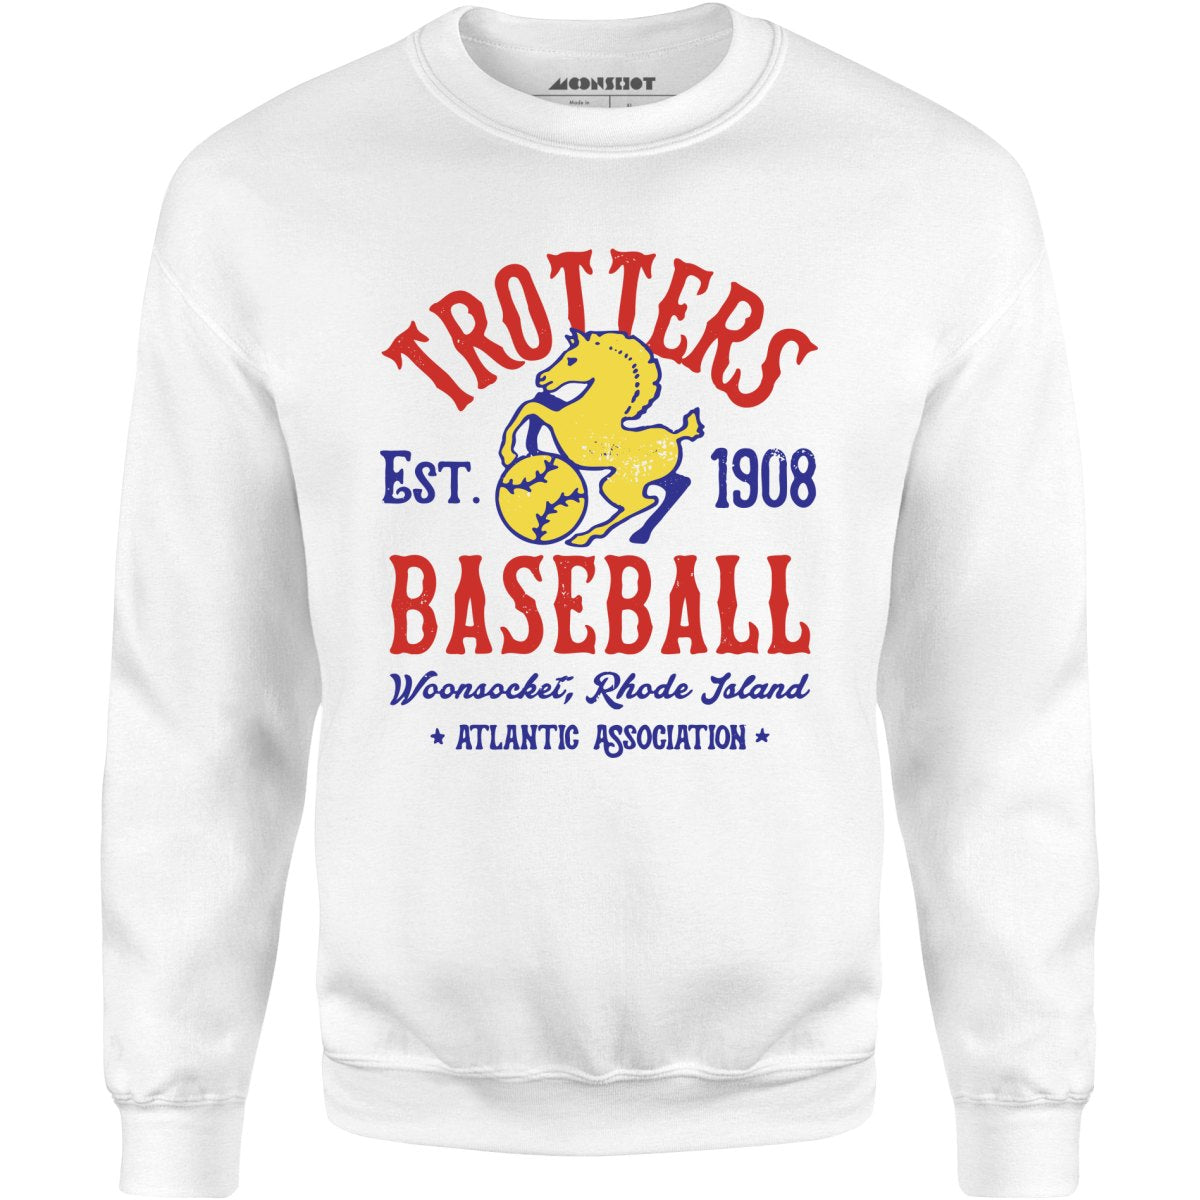 Woonsocket Trotters - Rhode Island - Vintage Defunct Baseball Teams - Unisex Sweatshirt